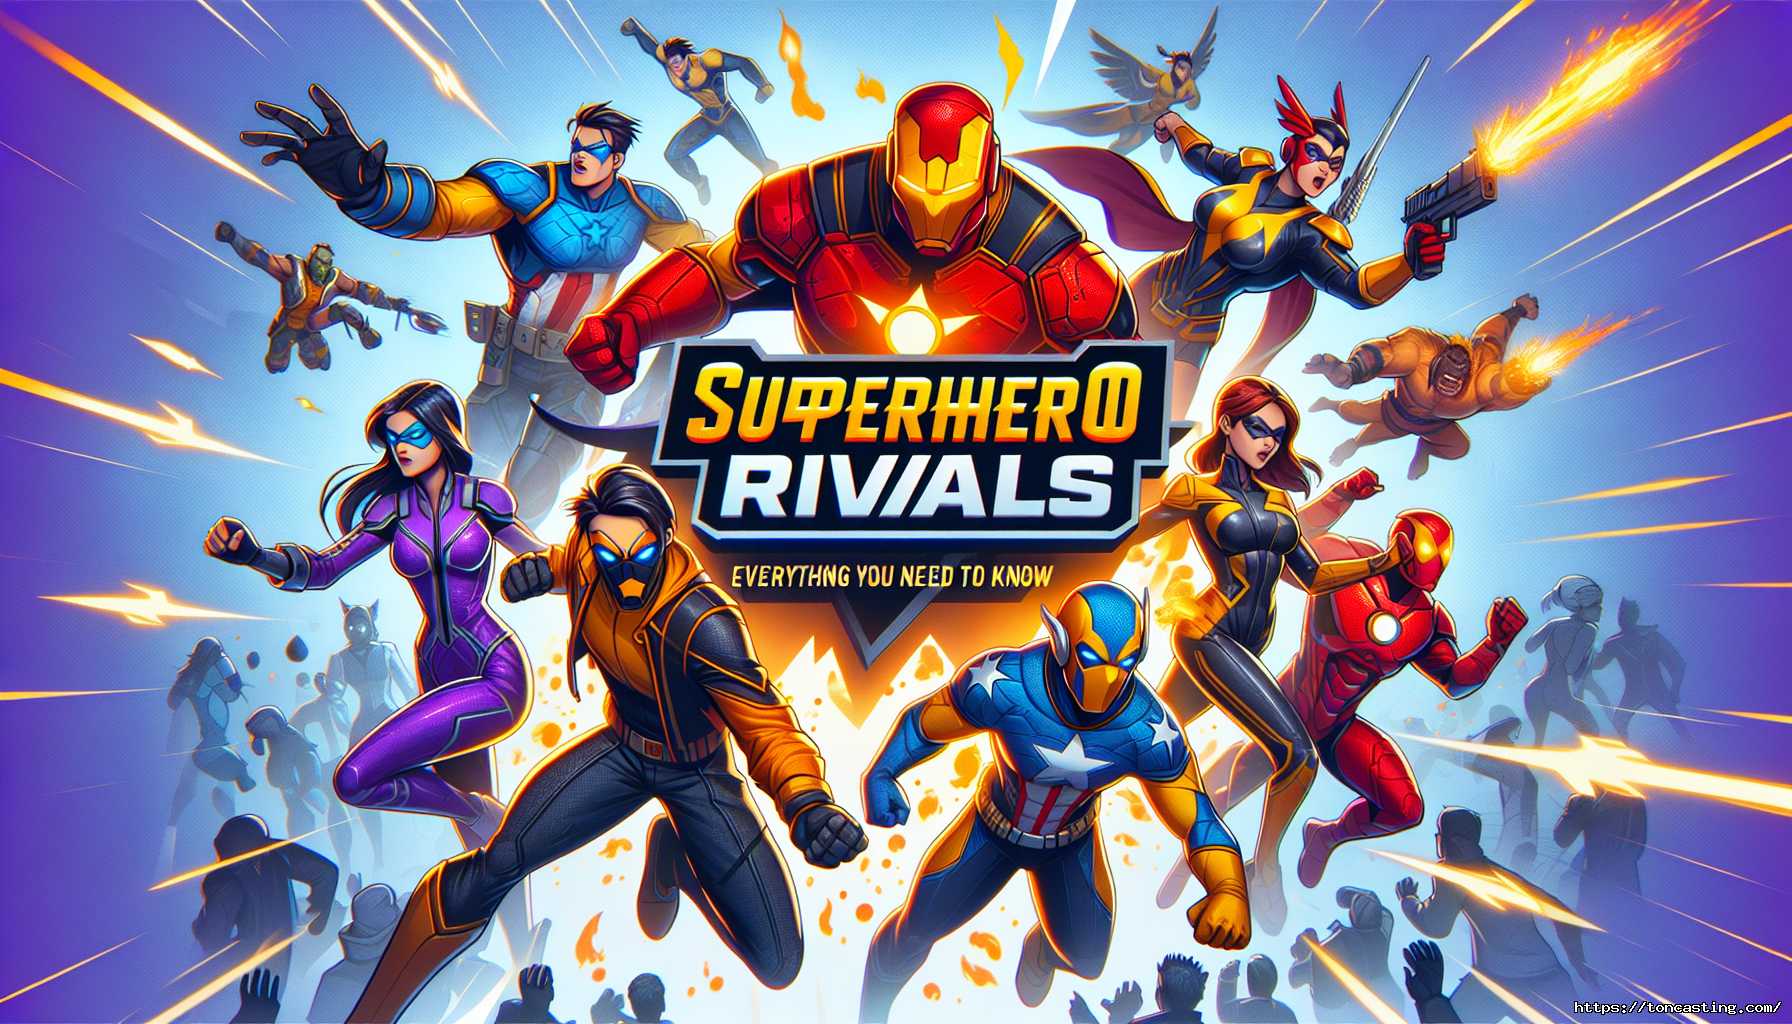 Affiche colorée avec plusieurs super-héros en action, du titre "Superhero Rivals".